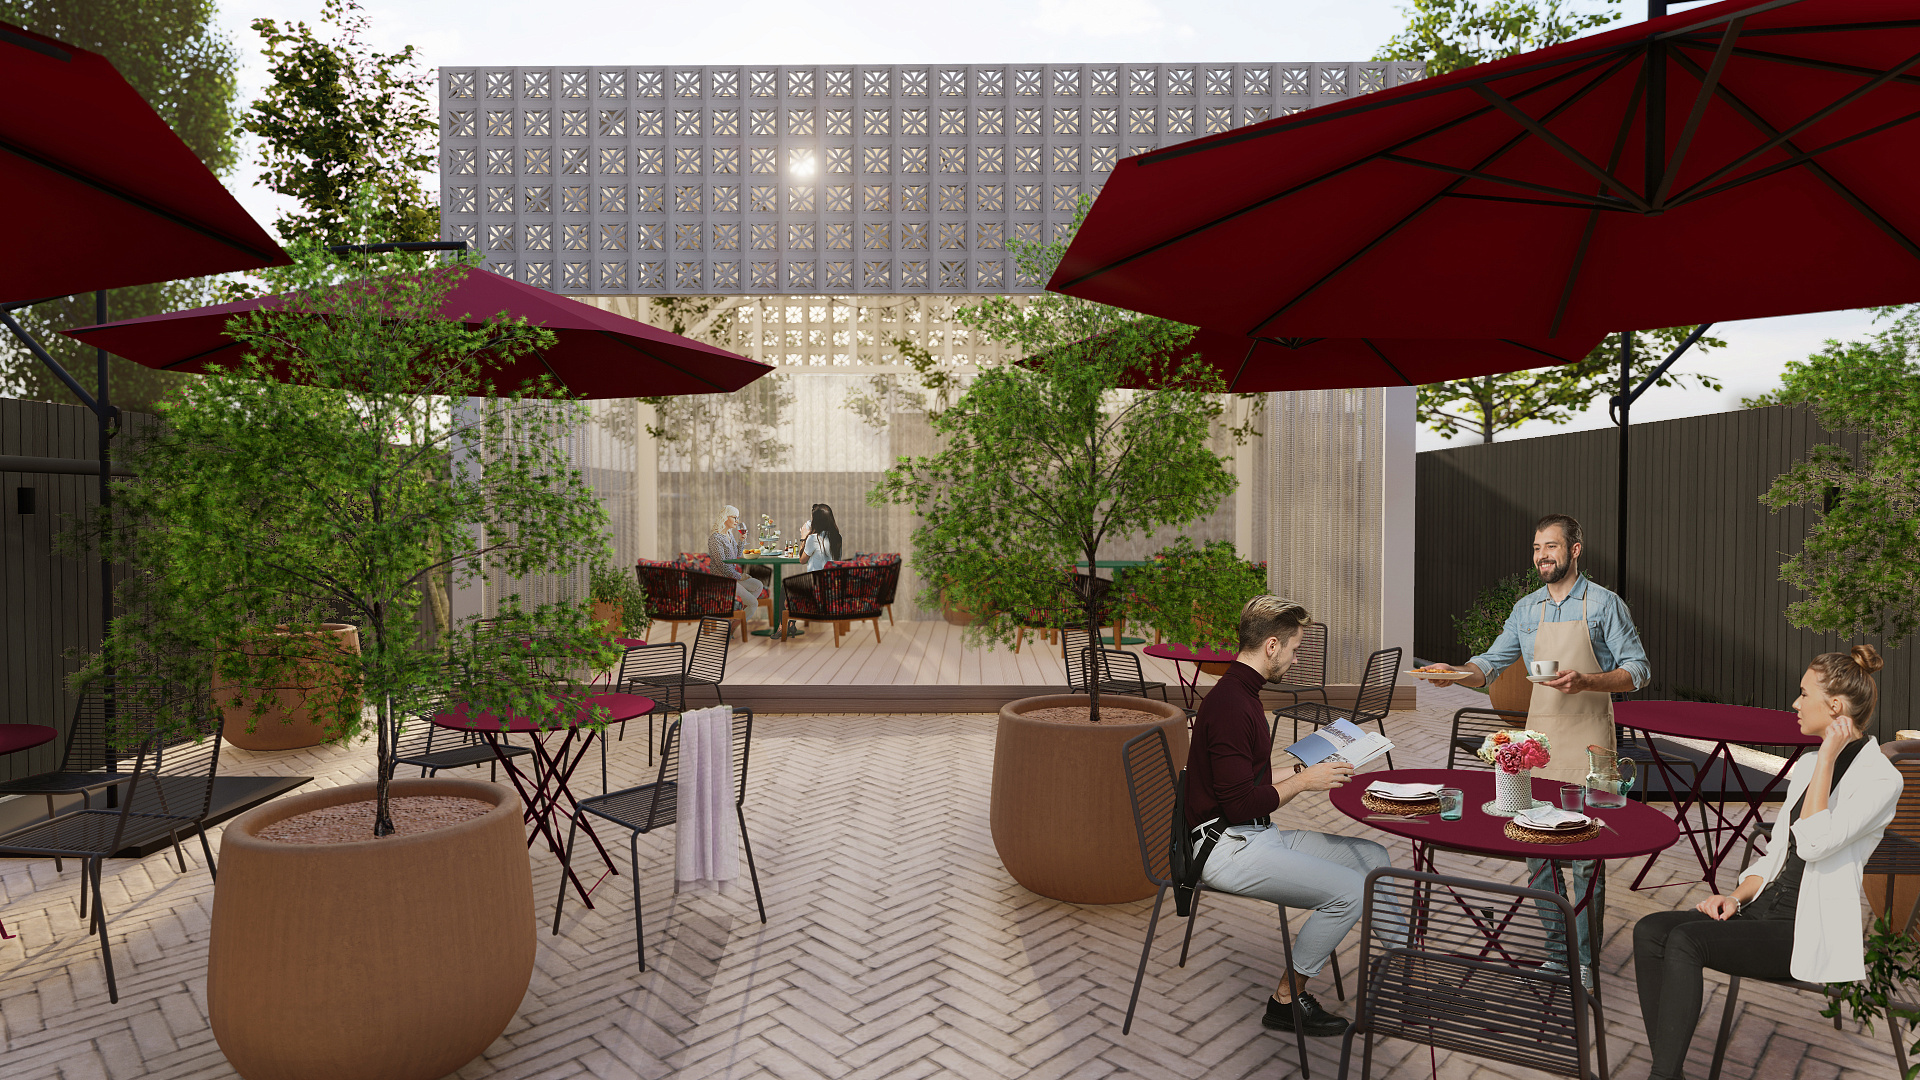 GRANAT Restaurant Landscape Concept by PROJECT architectural bureau